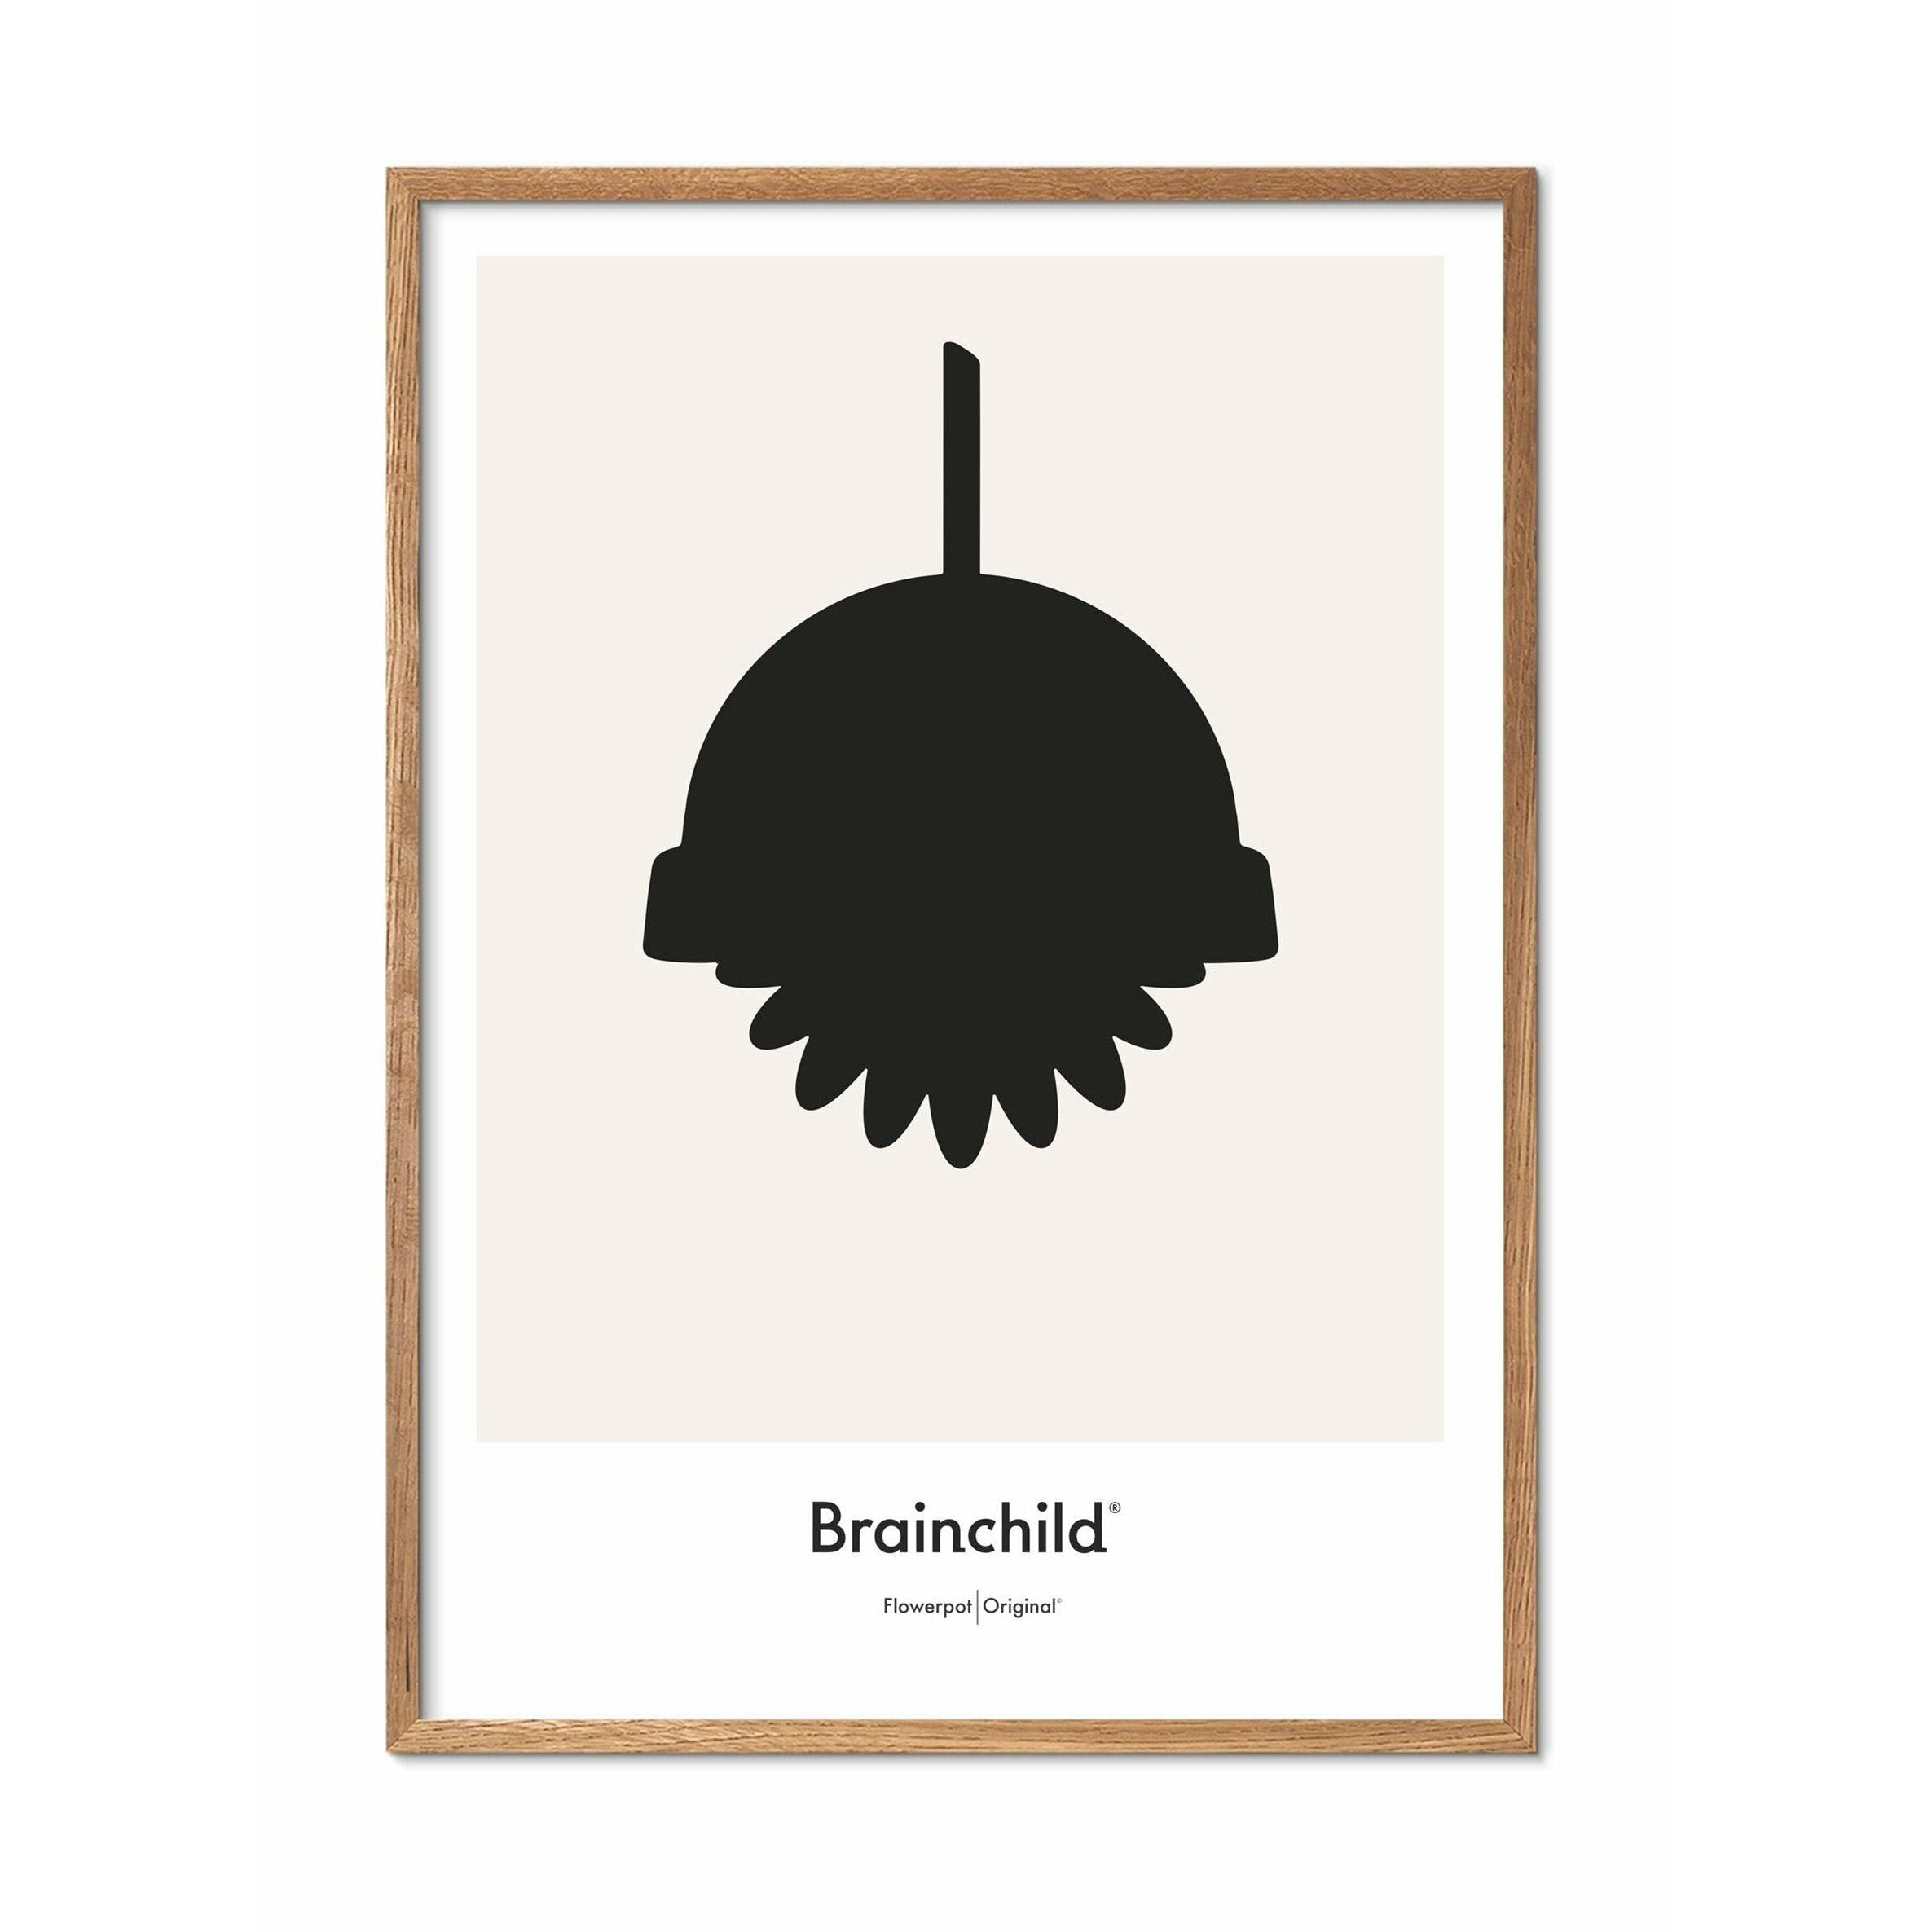 Brainchild Flower Pot Design Icon Poster, Frame Made of Light Wood 50x70 cm, Gray